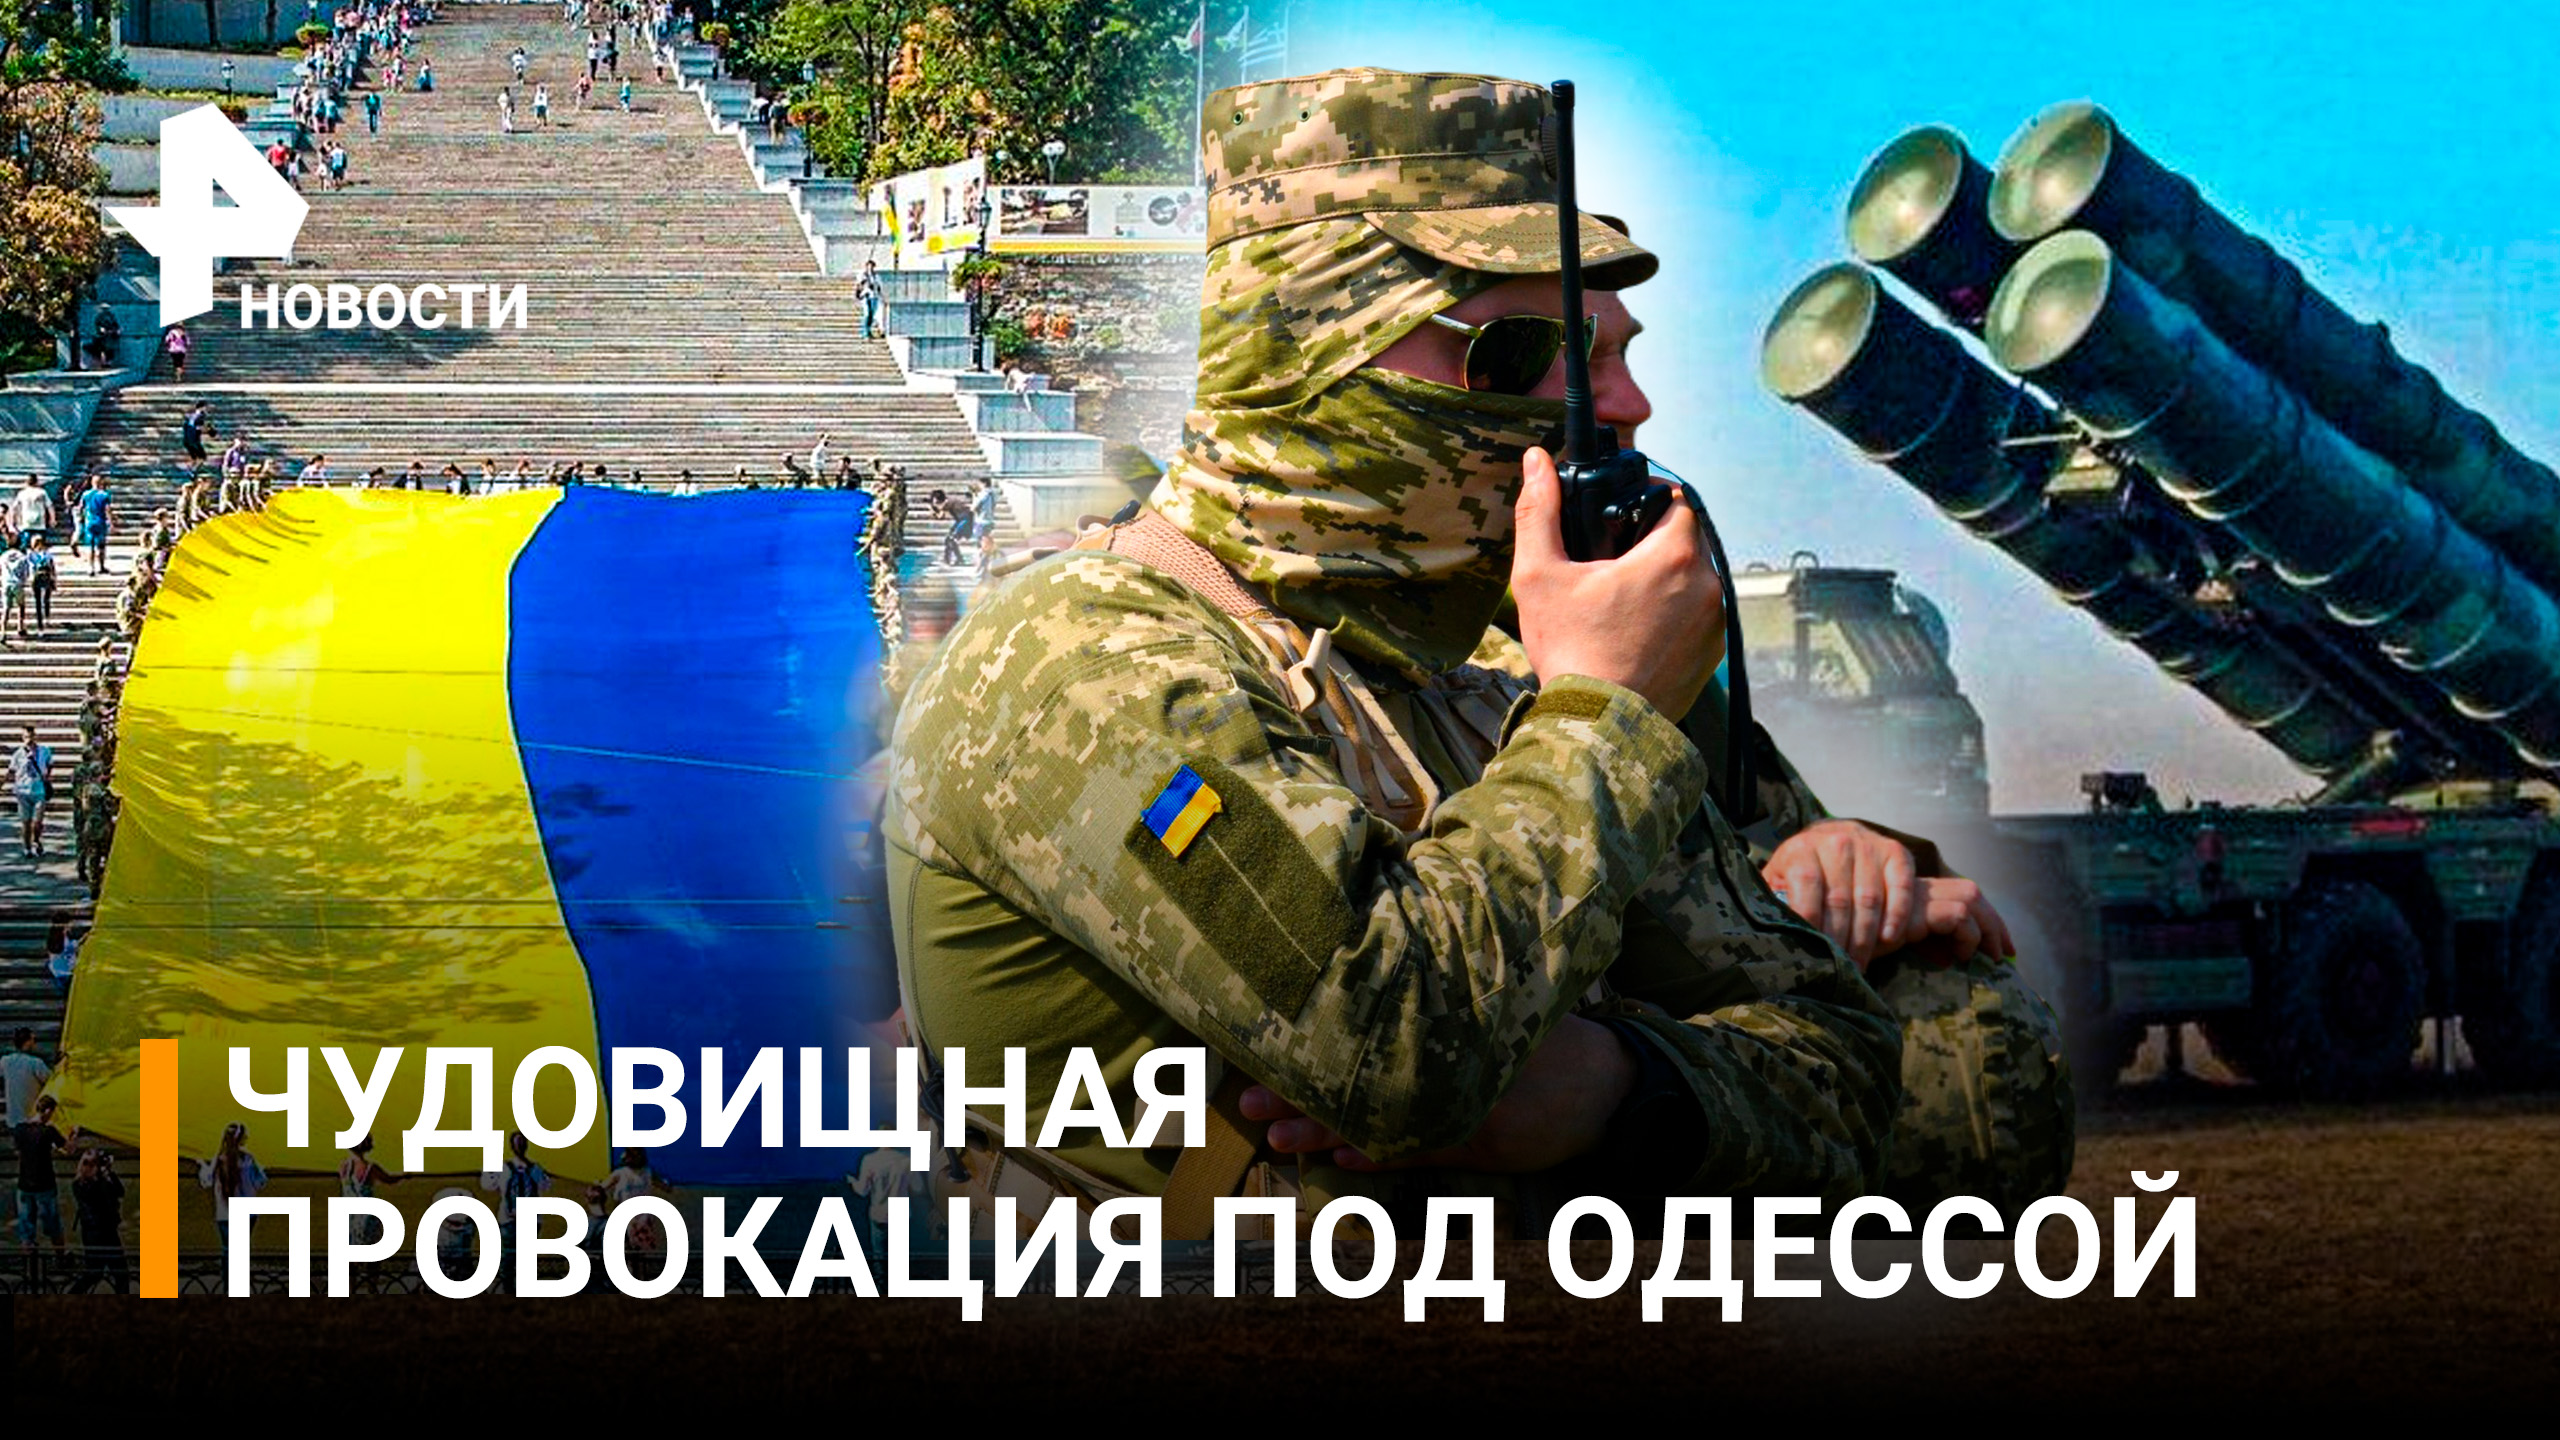 Новая провокация: ВСУ планируют разместить комплекс ПВО под Одессой / РЕН Новости